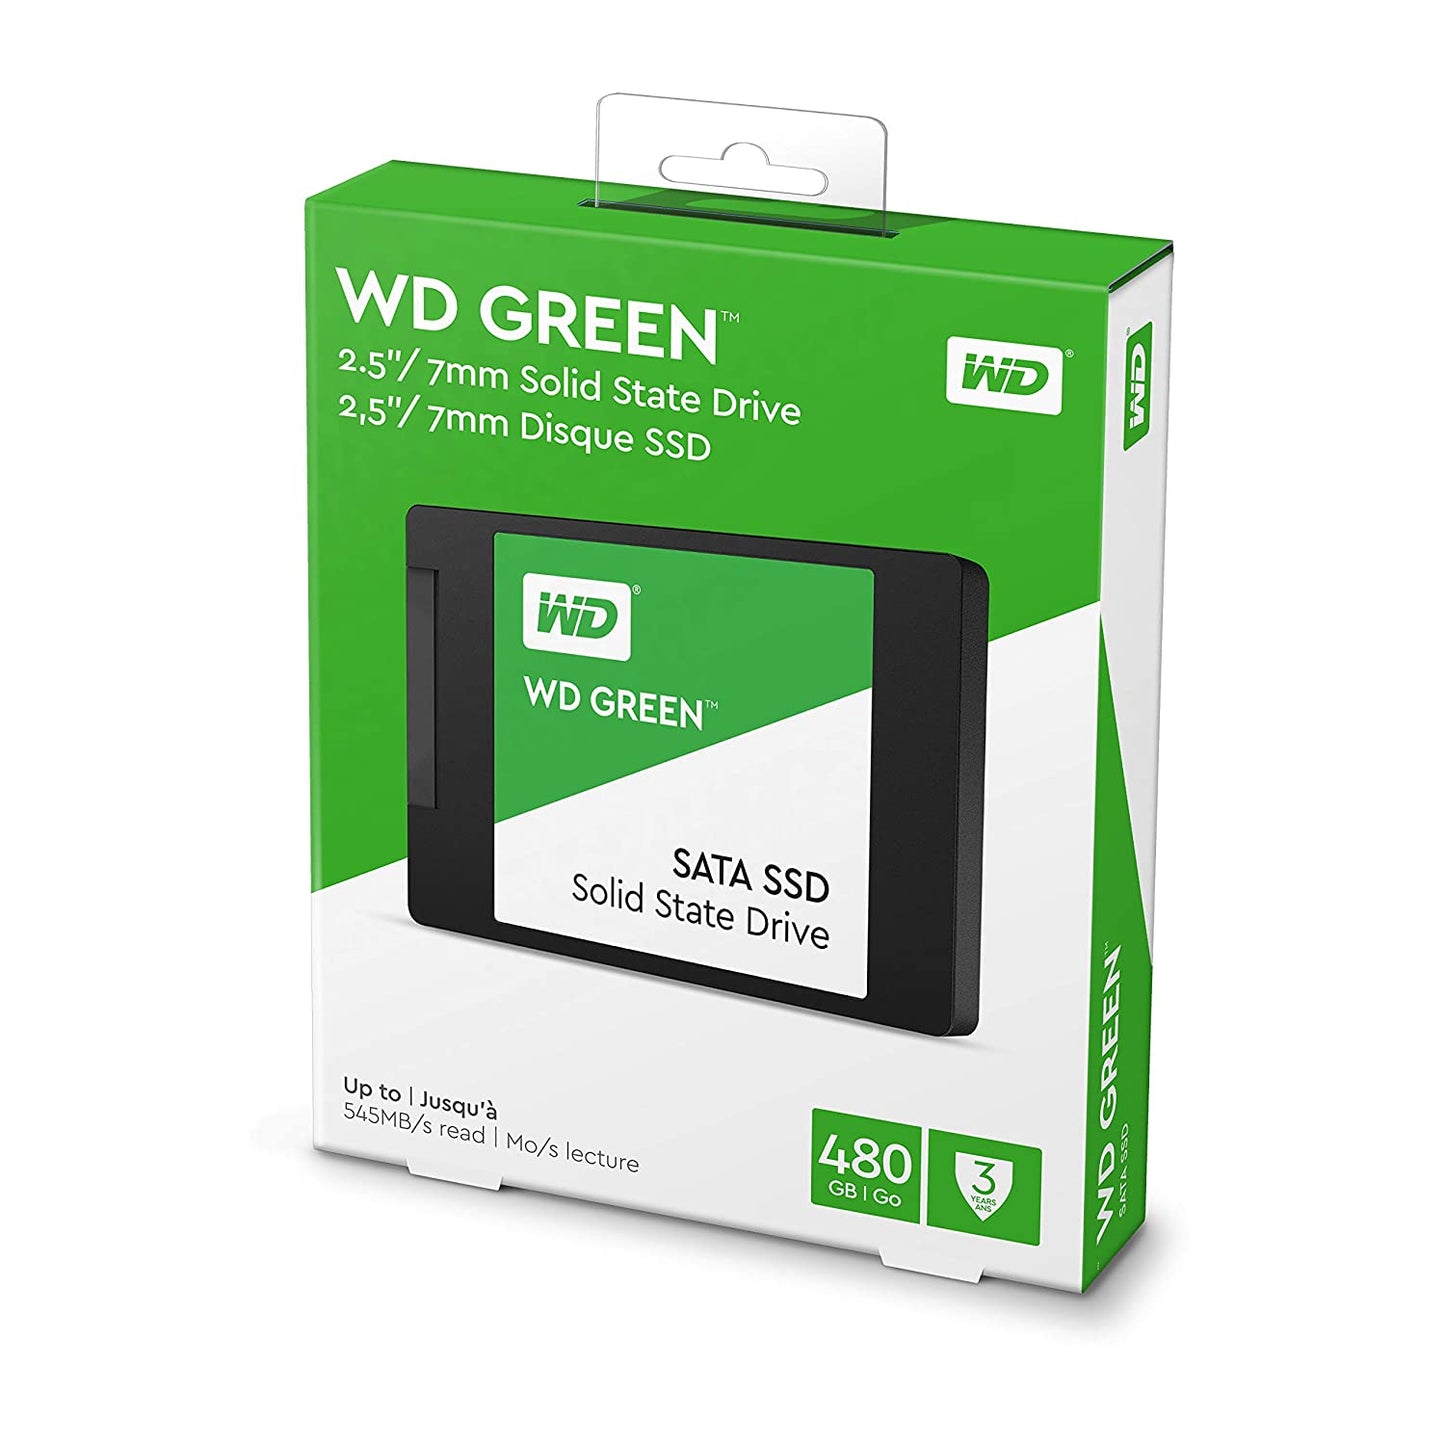 SSD-480-GB-WD-SATA-84717090